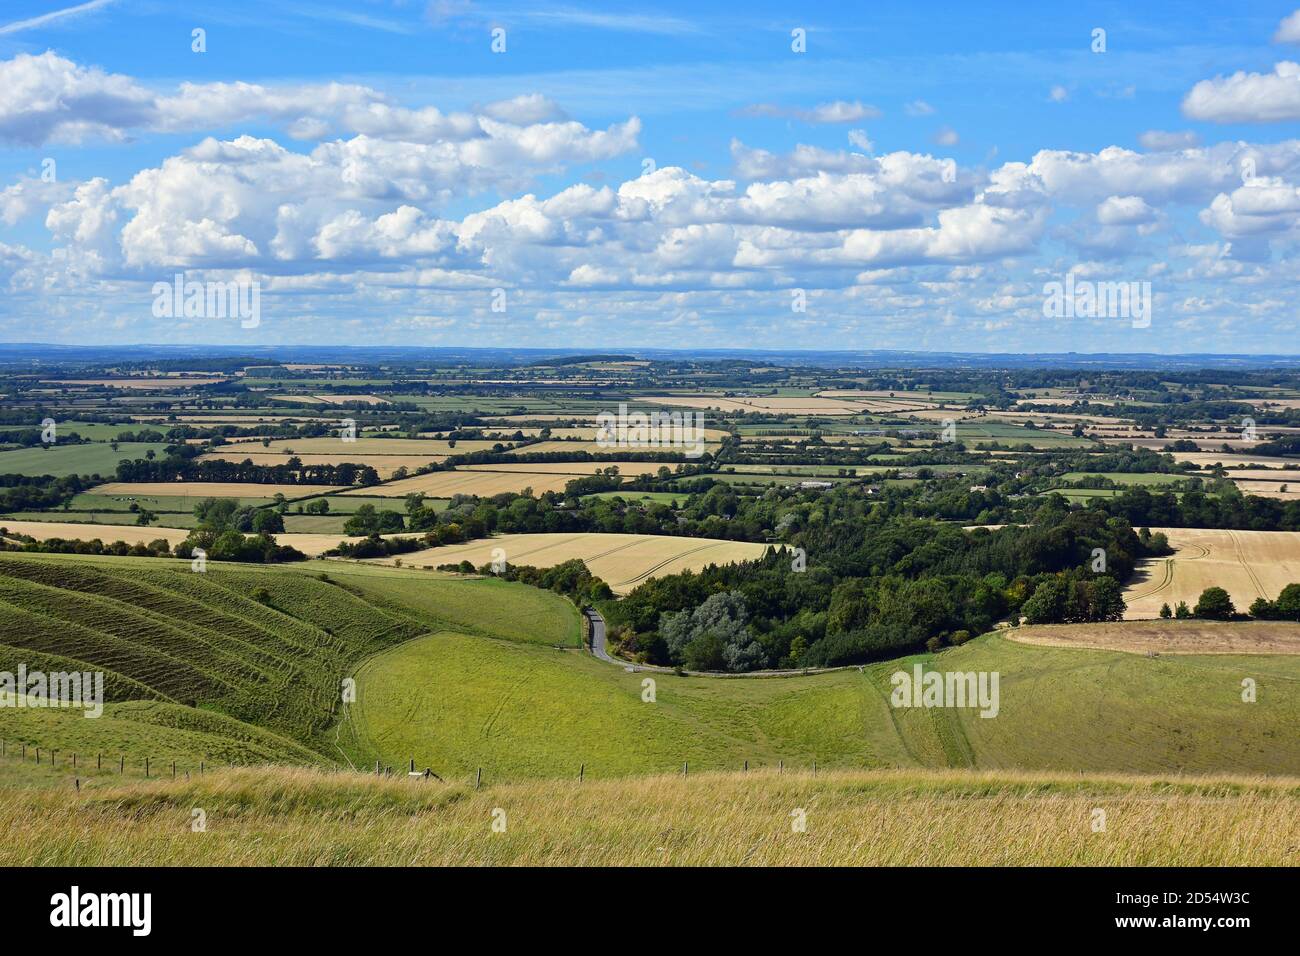 Vista dal Cavallo Bianco di Uffington e dal Castello di Uffington, Oxfordshire, Regno Unito. Le onde, note come gradini del Gigante, si possono vedere sulla sinistra dell'immagine. Foto Stock